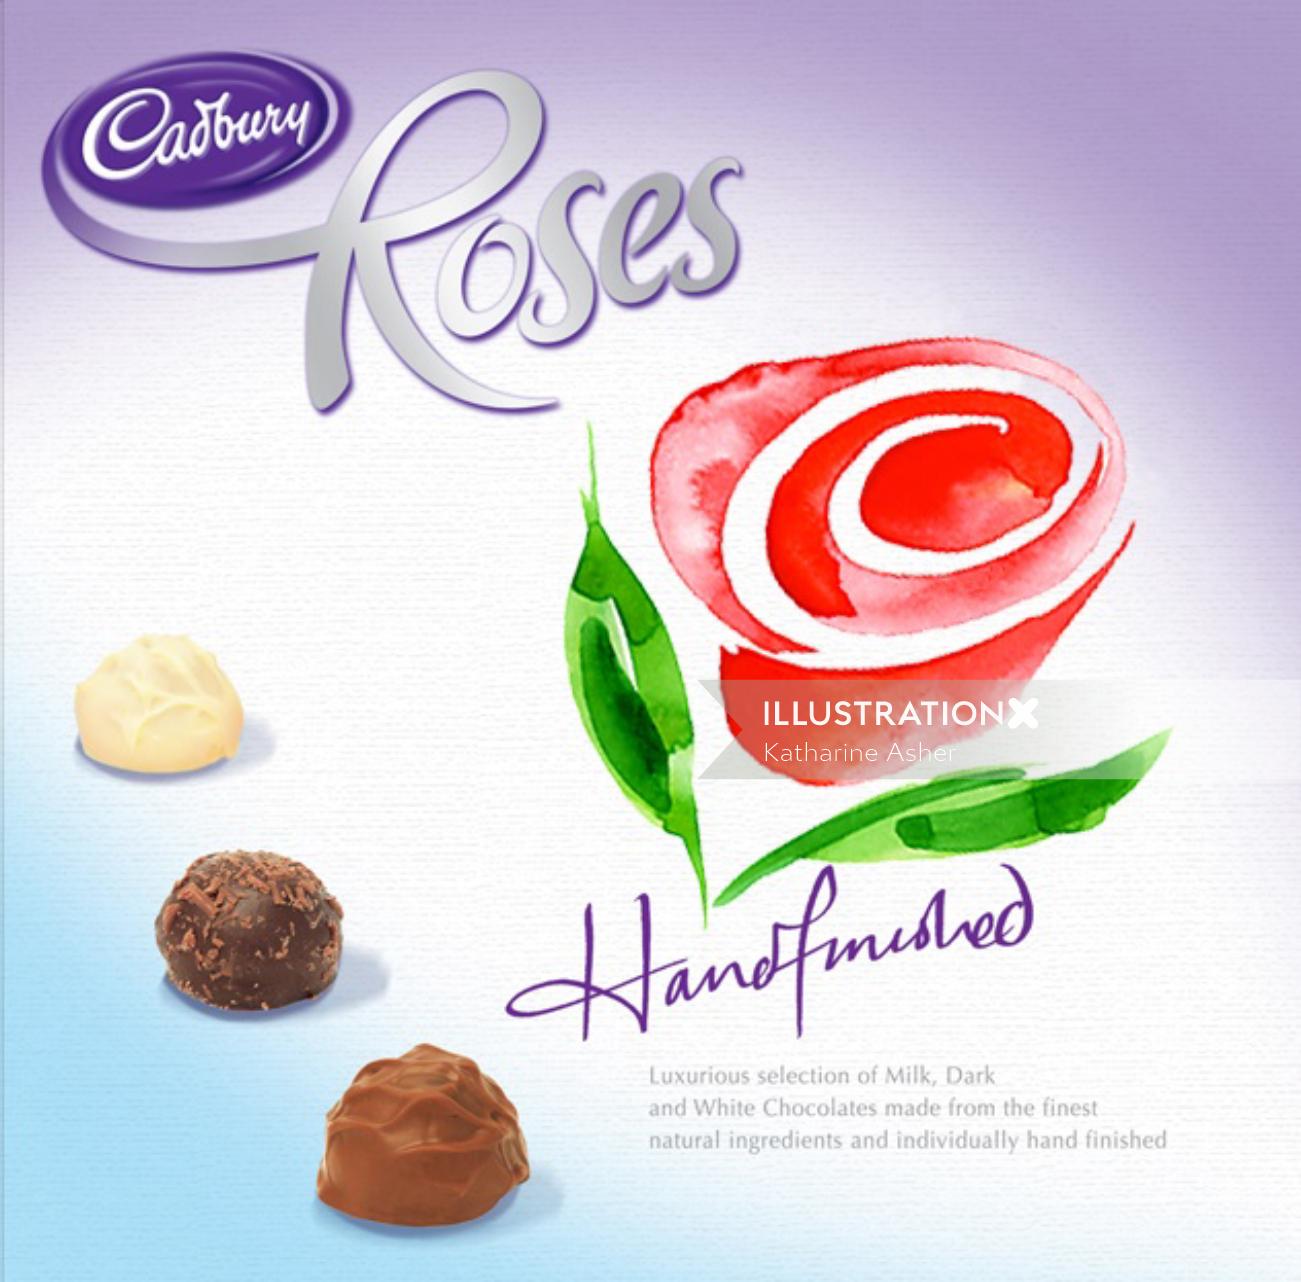 Ilustração de chocolates de rosas Cadburys por Katharine Asher